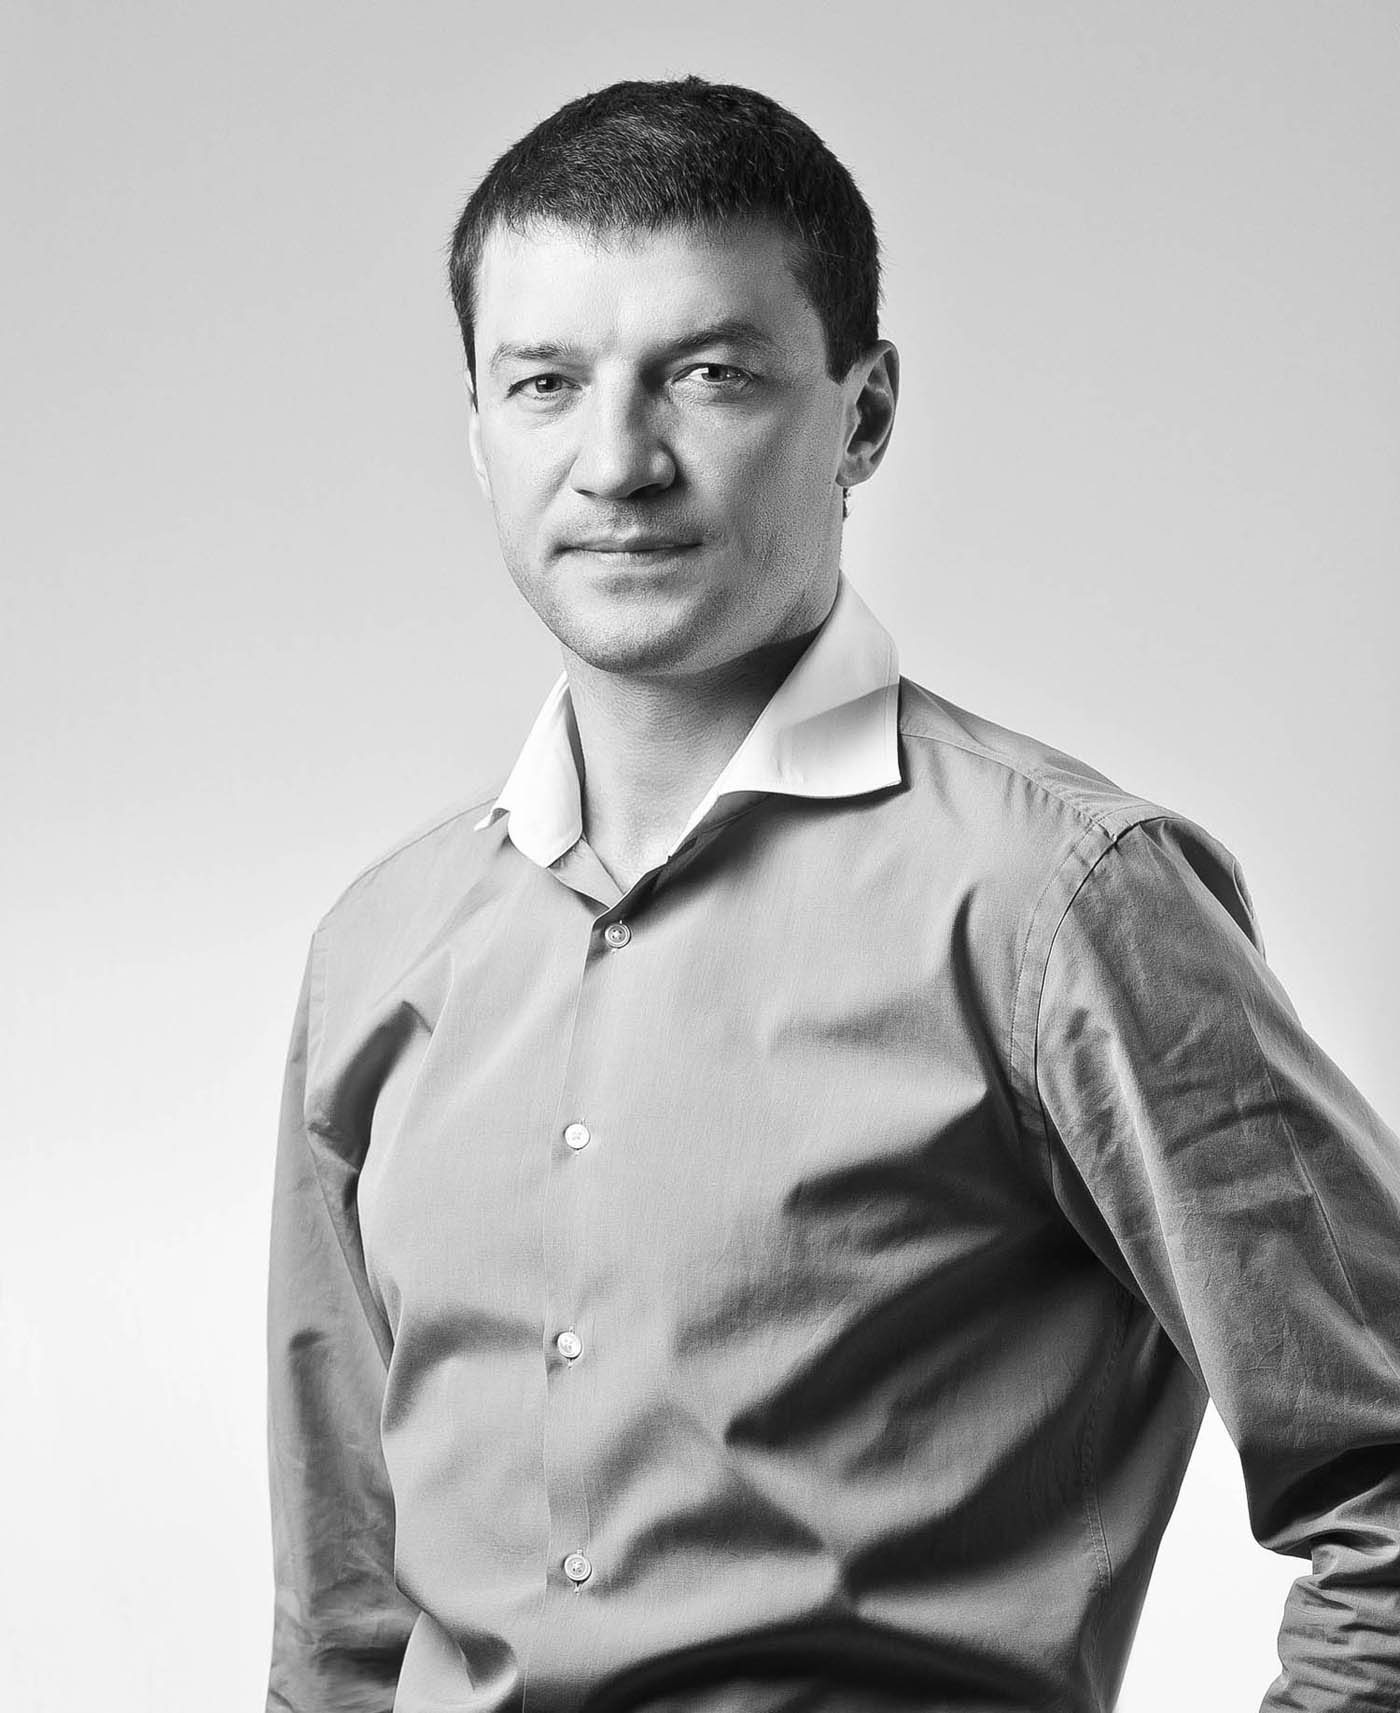 Евгений Макаренко, многократный чемпион мира и Европы, капитан олимпийской сборной России по боксу на летних Олимпийских играх 2004 года, депутат Тюменской областной Думы.